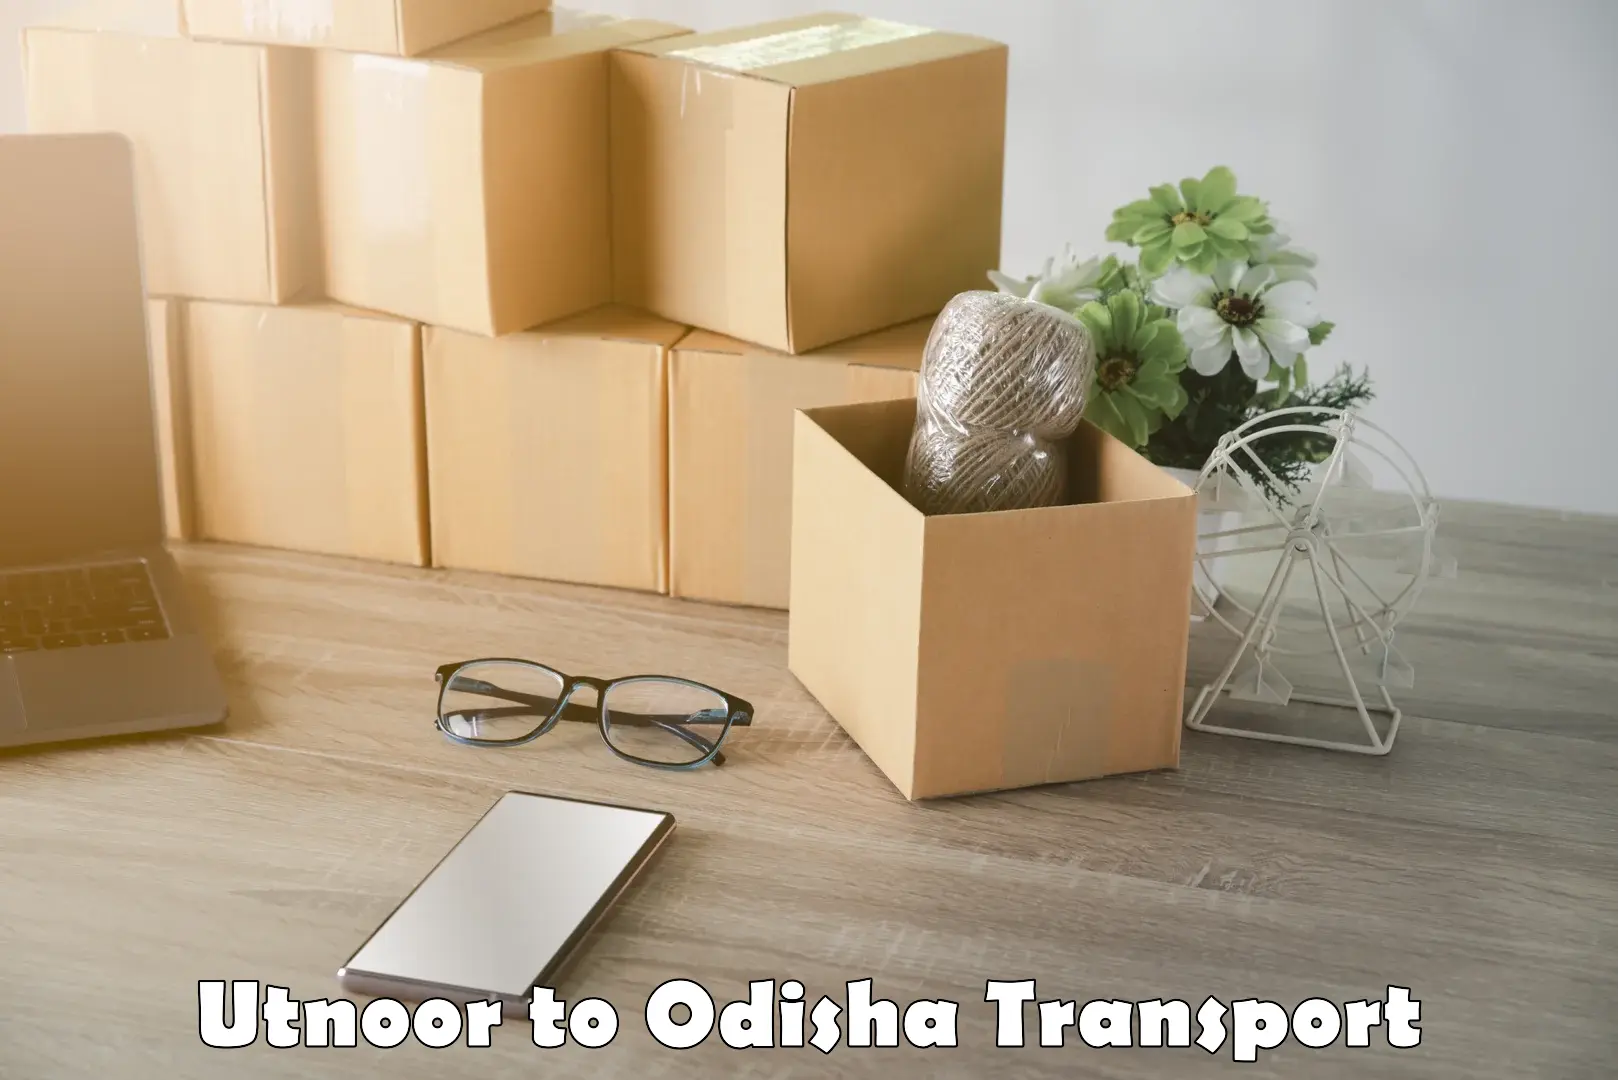 Furniture transport service in Utnoor to Mohana